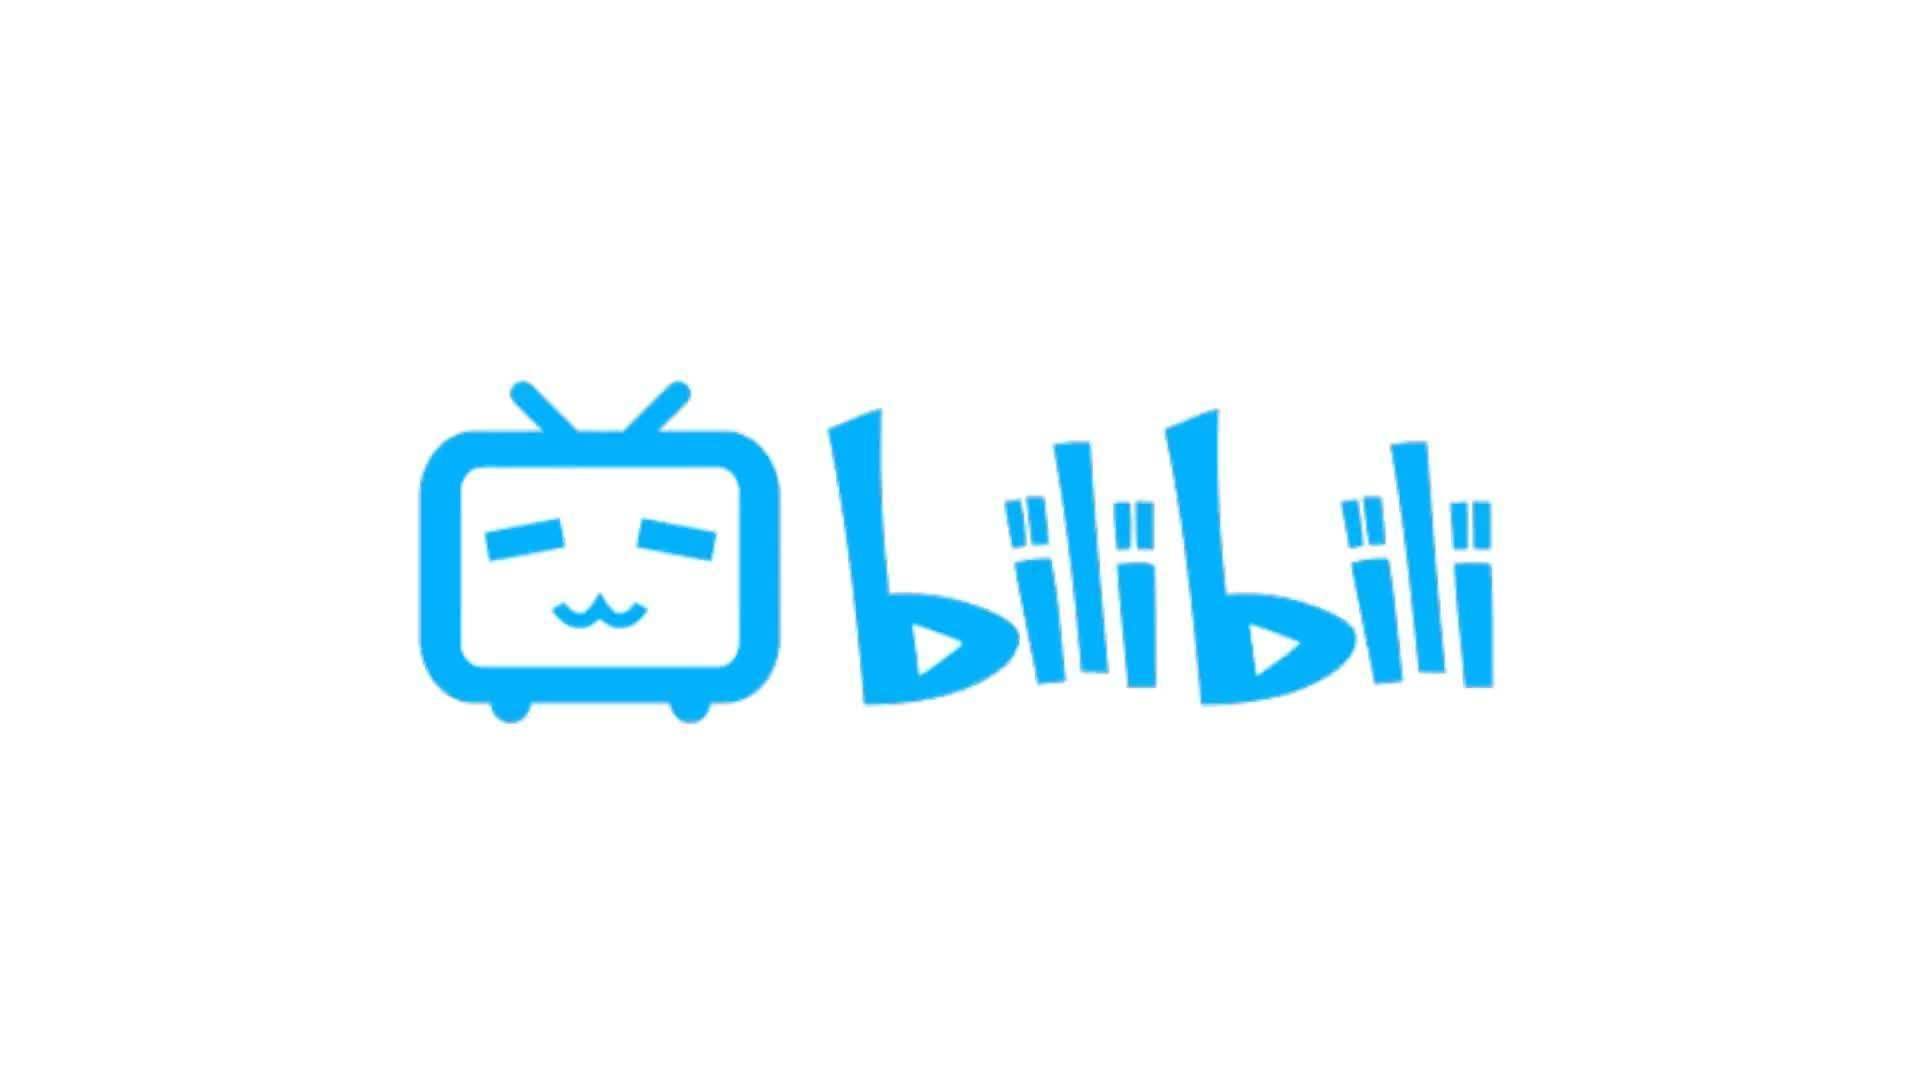 bilibili:占领中国年轻一代互联网视频市场